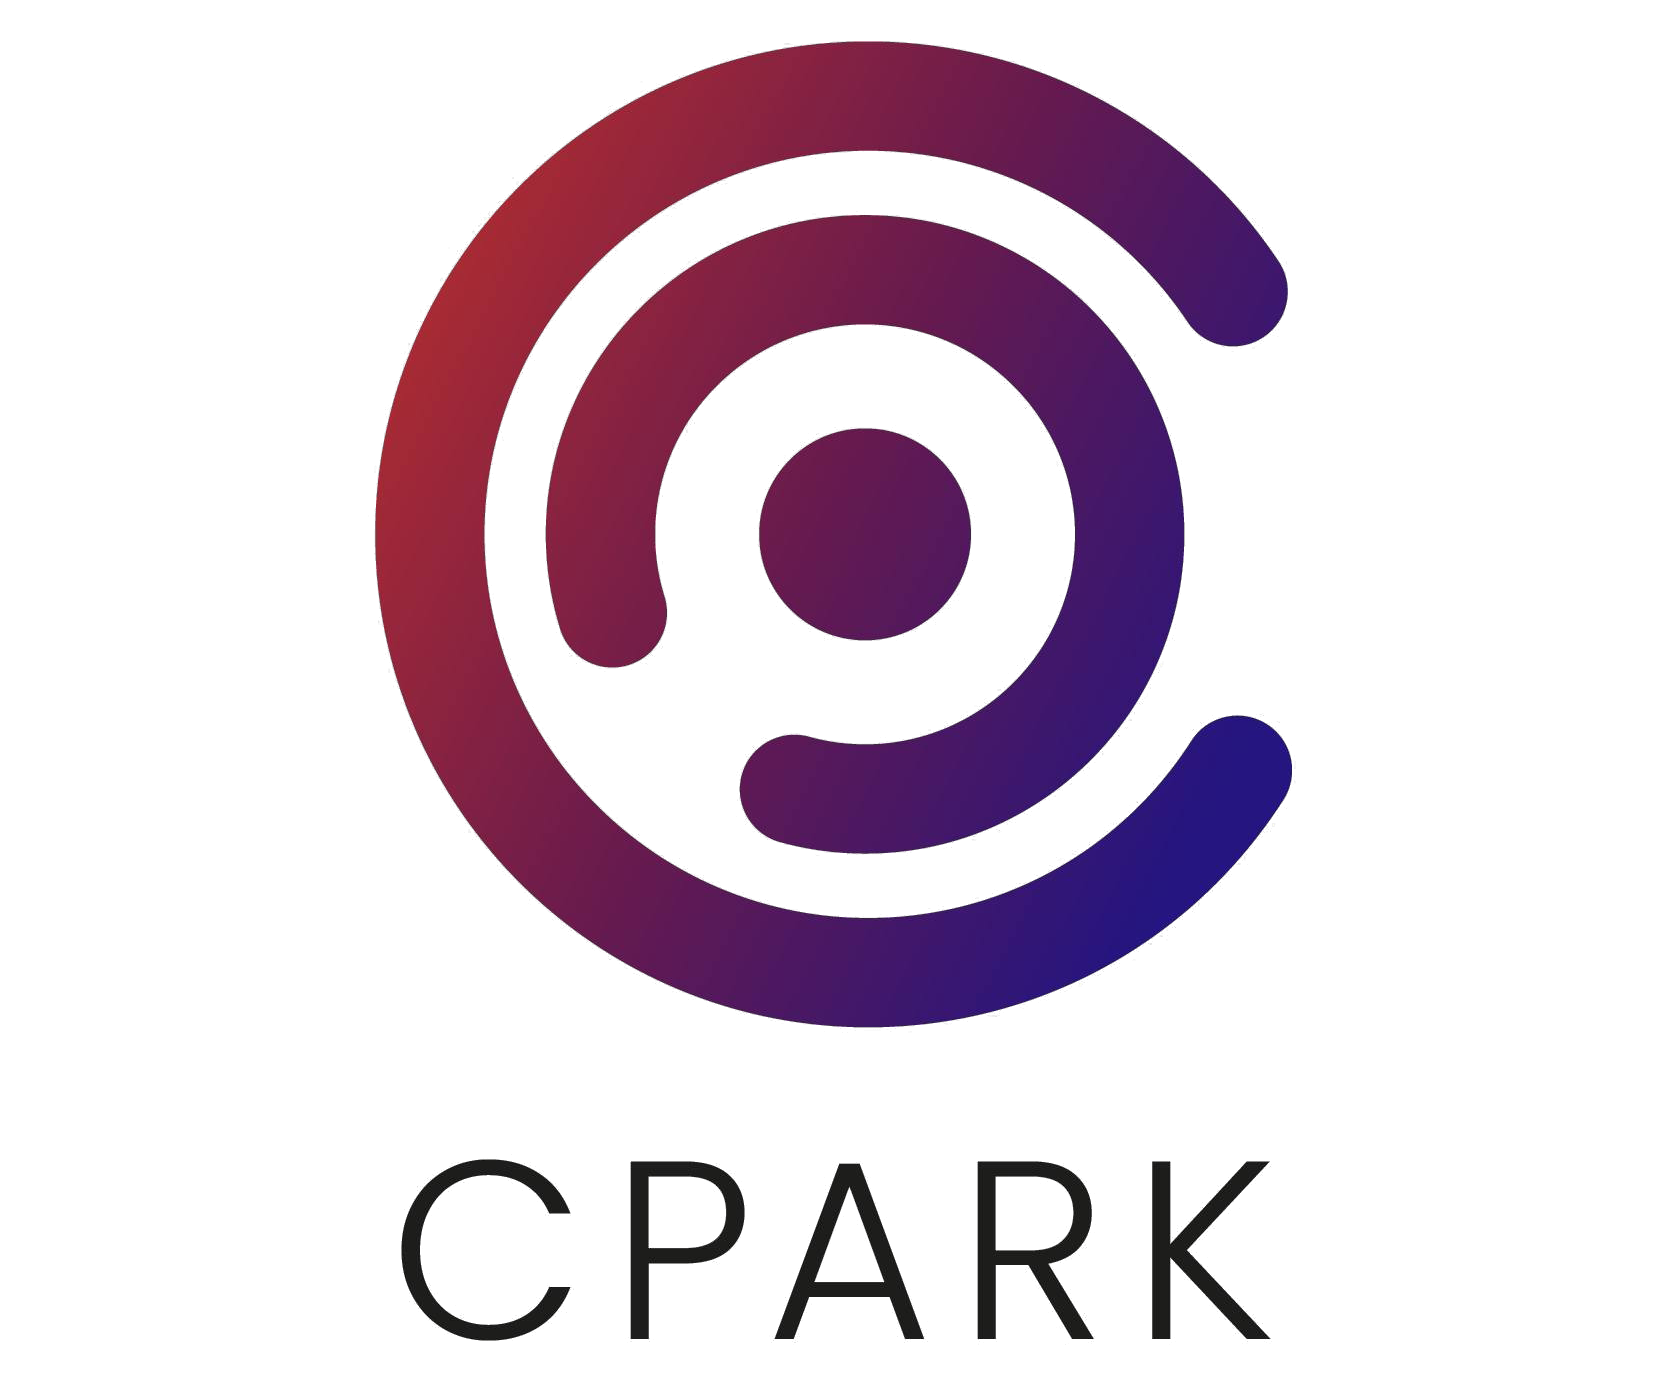 Company logo of Cpark.